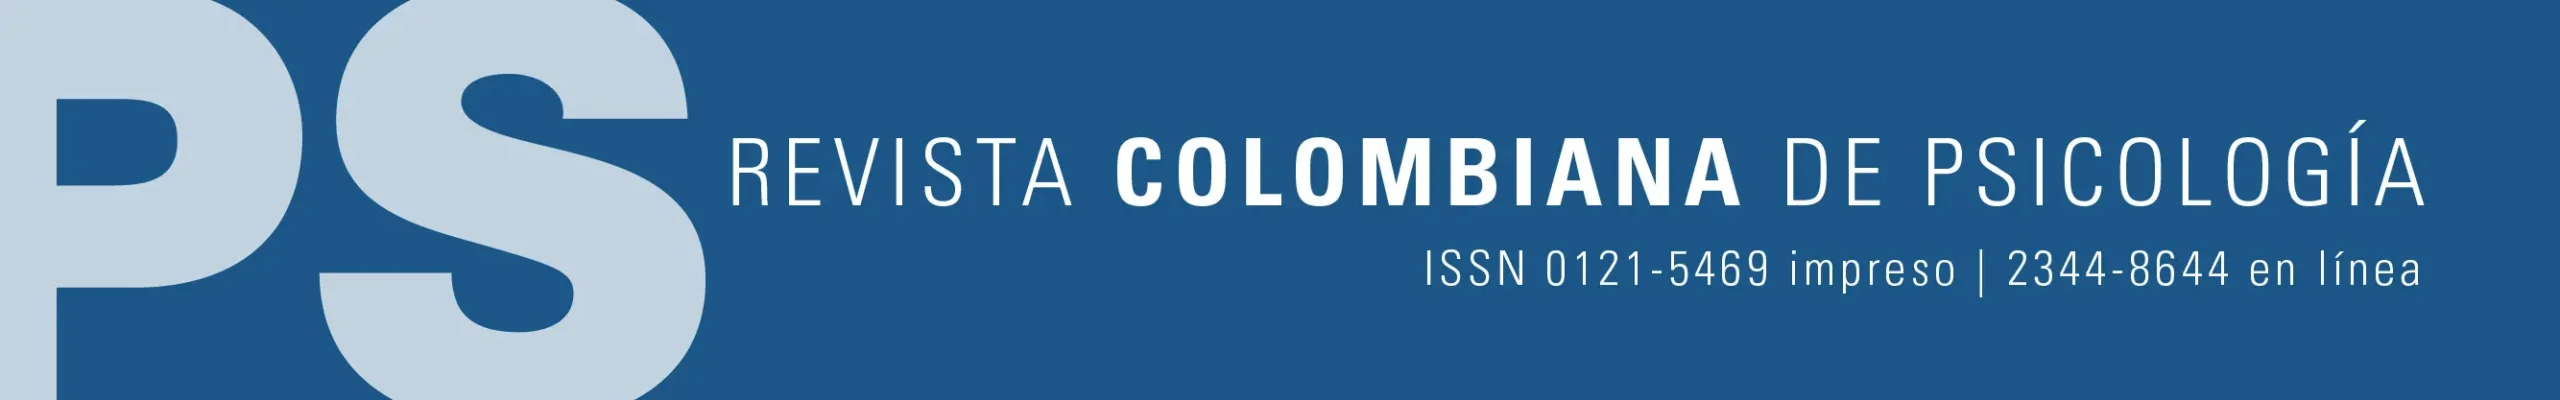 revista colombiana de psicologia - Quién trajo la psicología a Colombia